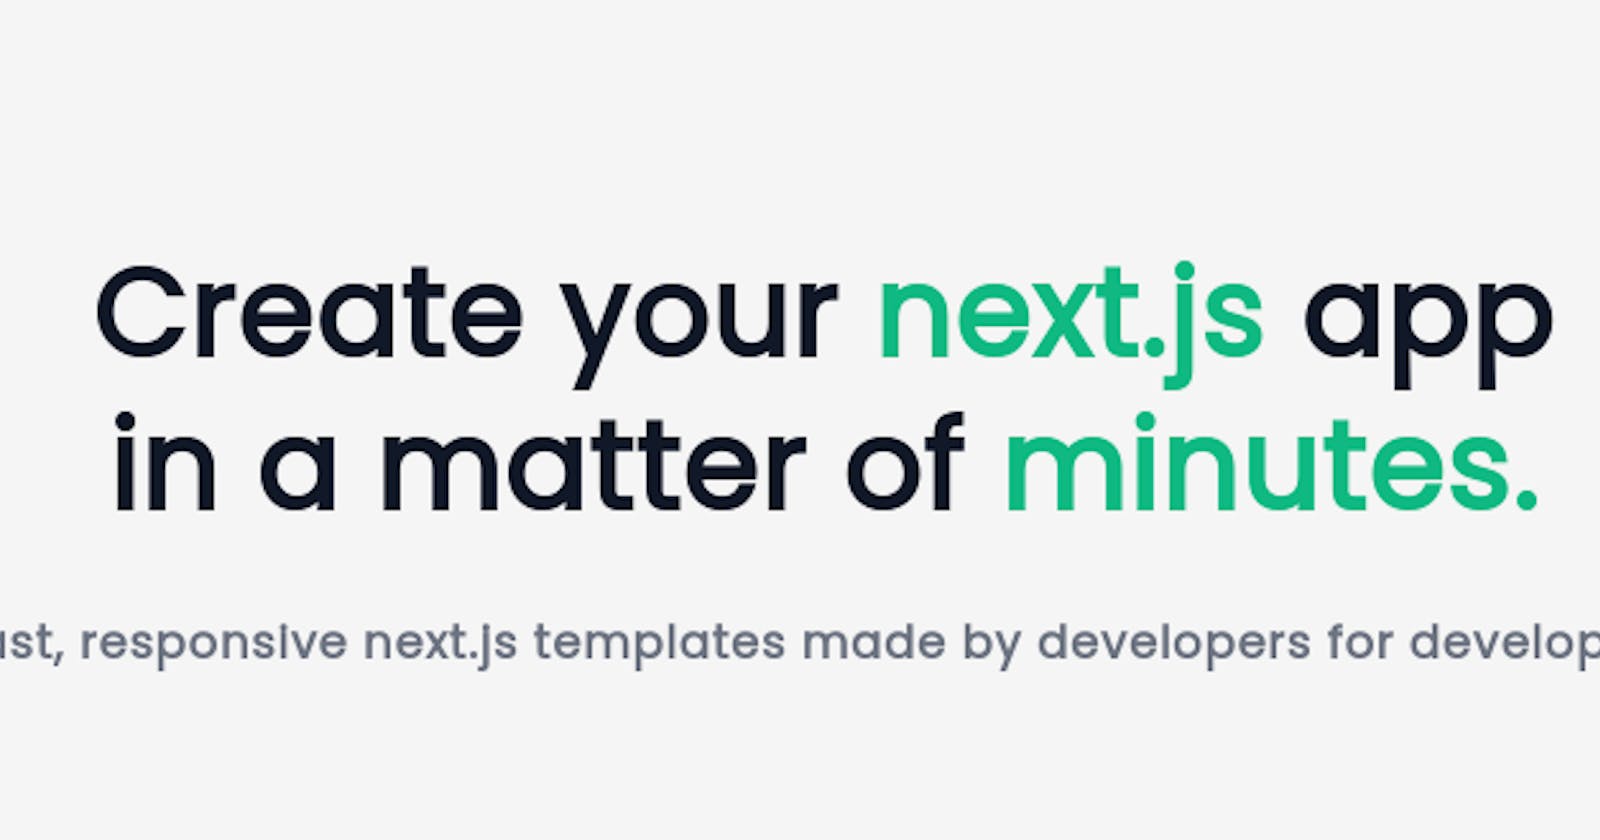 Next.js templates is now live